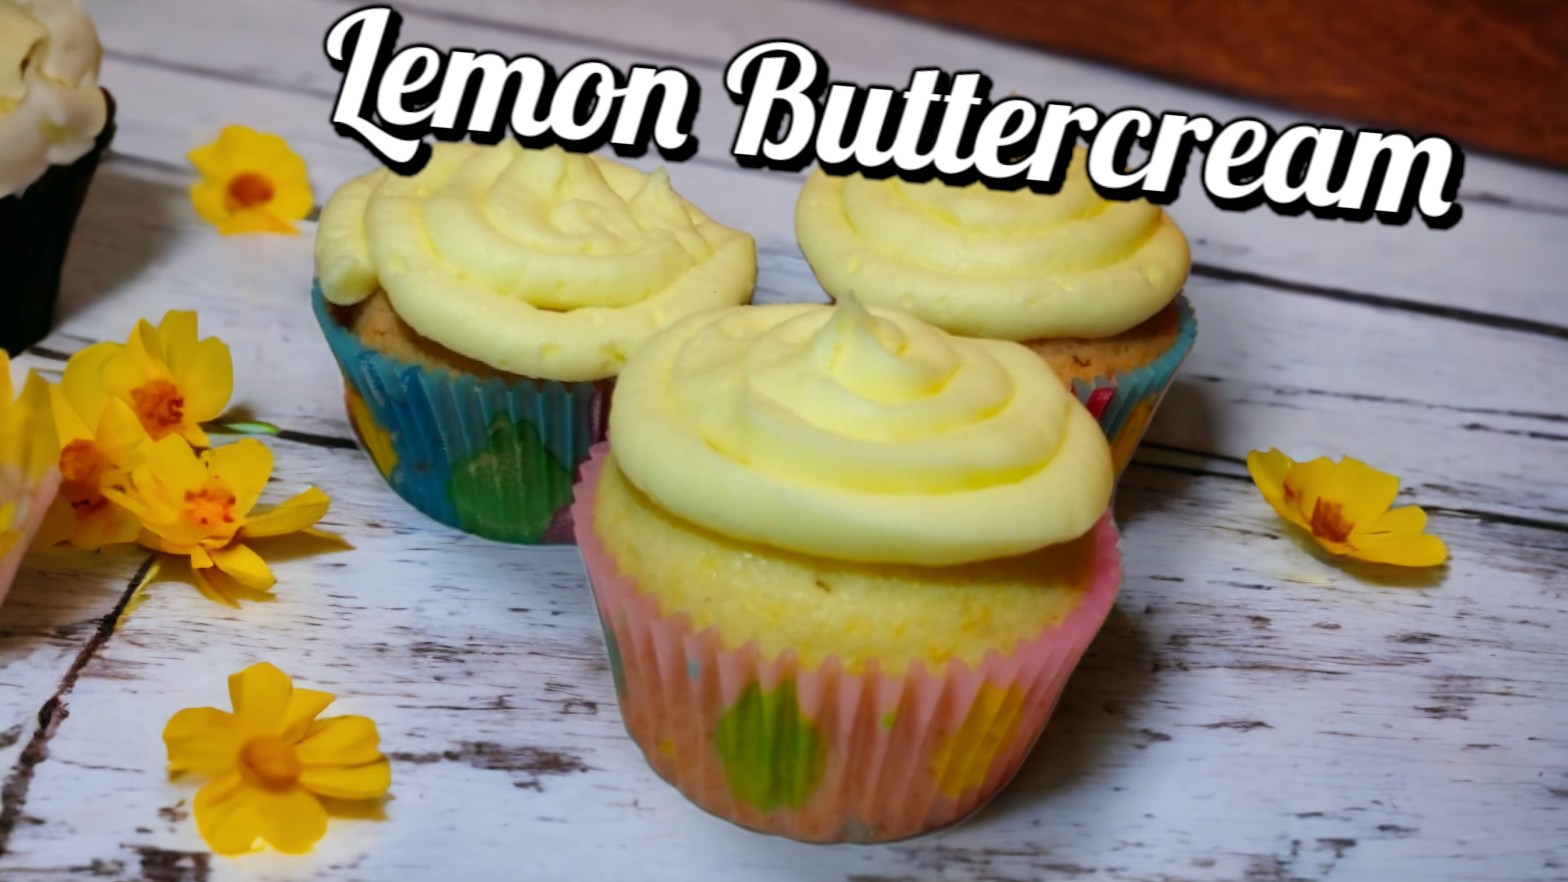 How to Make Lemon Buttercream